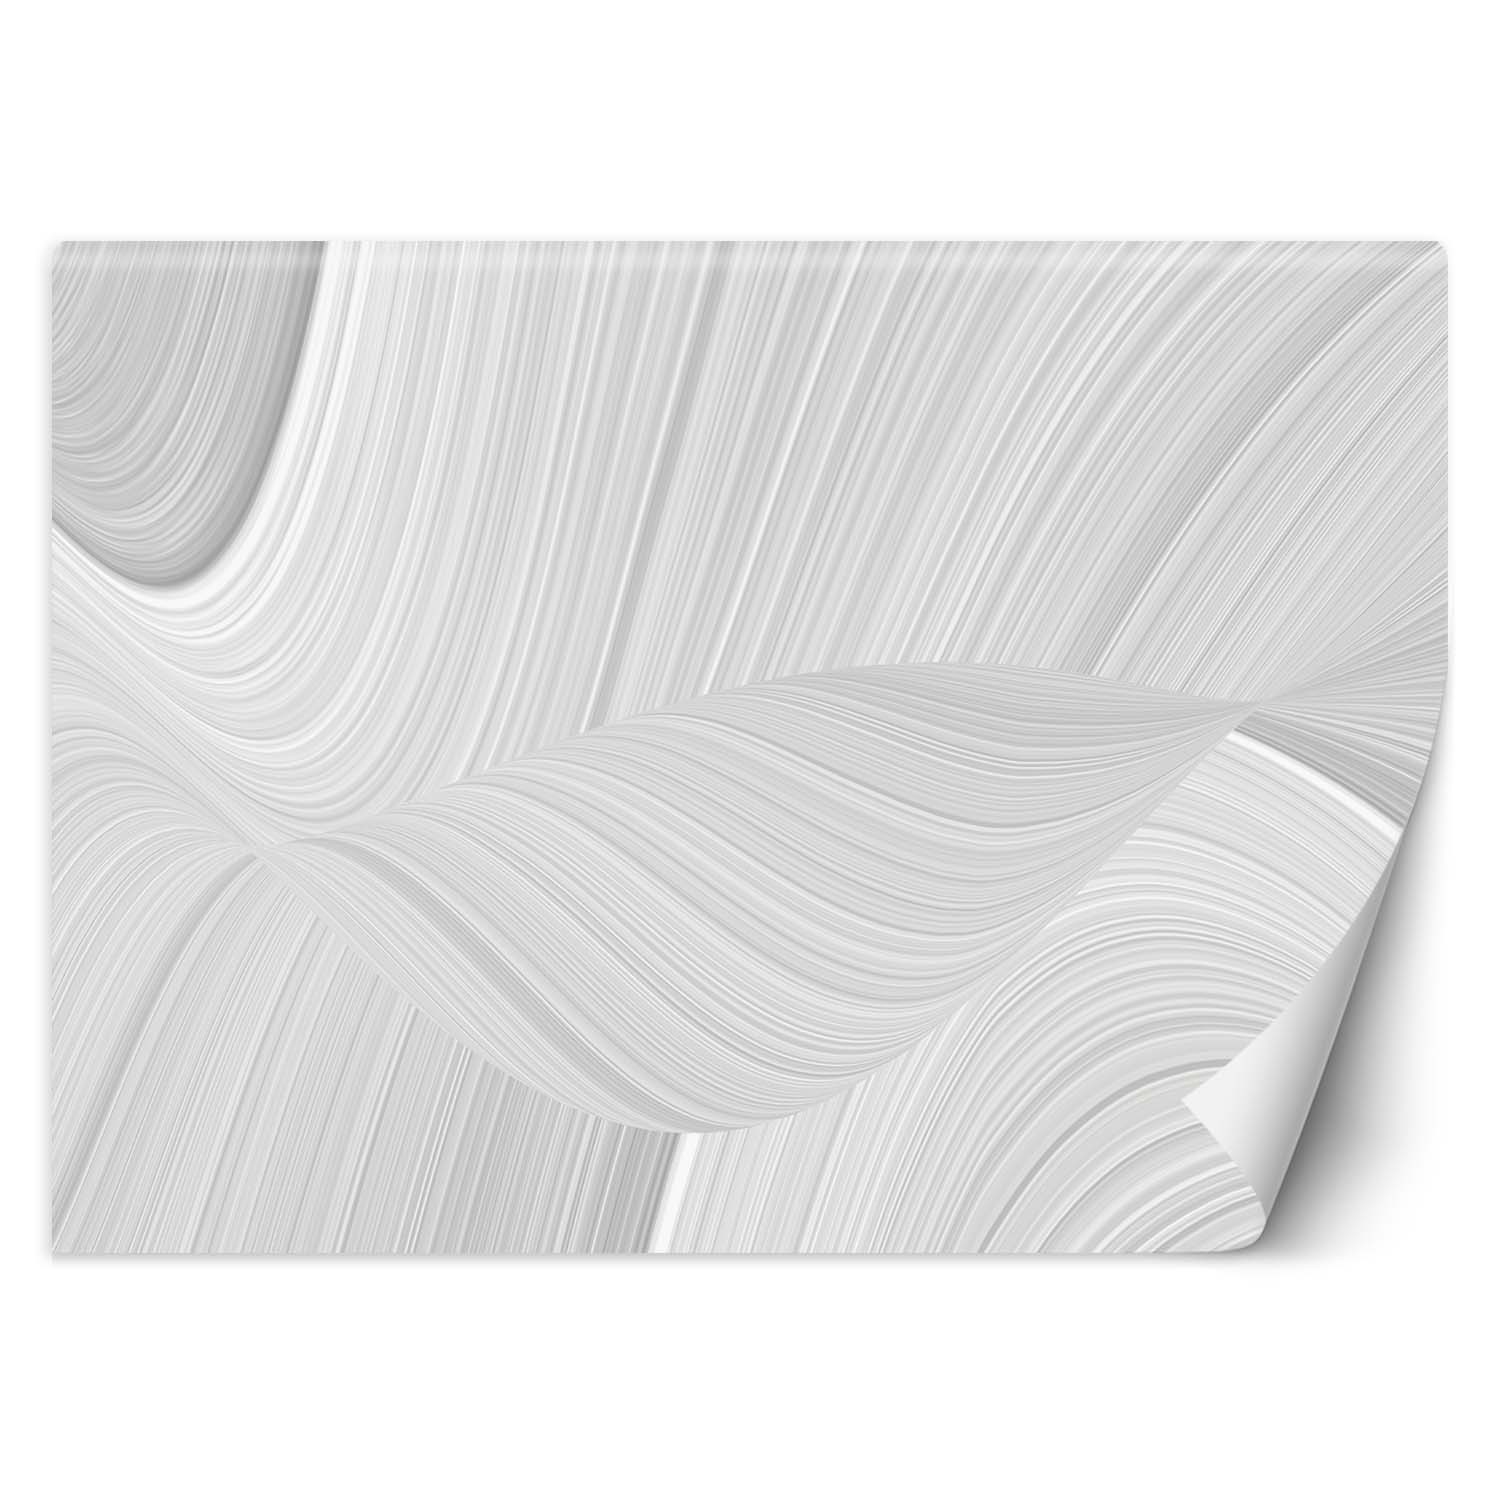 Trend24 – Behang – Texture Blur – Vliesbehang – Fotobehang 3D – Behang Woonkamer – 450x315x2 cm – Incl. behanglijm